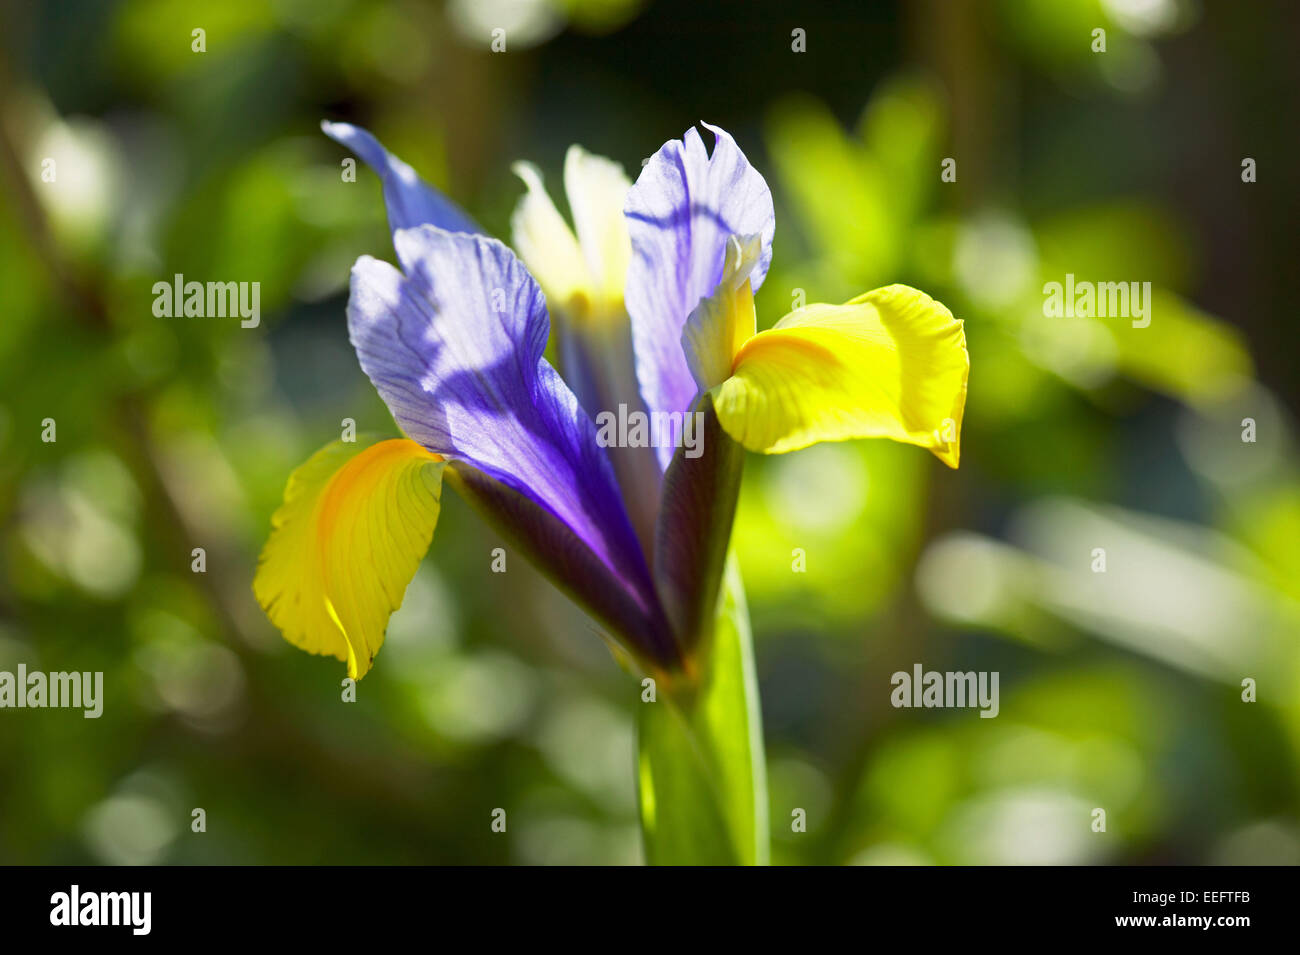 Iris Aussen Blume Blumen Bluete Botanik Empfindlich Farbe Blau Gelb Nahaufnahme Natur Pflanze Pflanzen Stock Photo